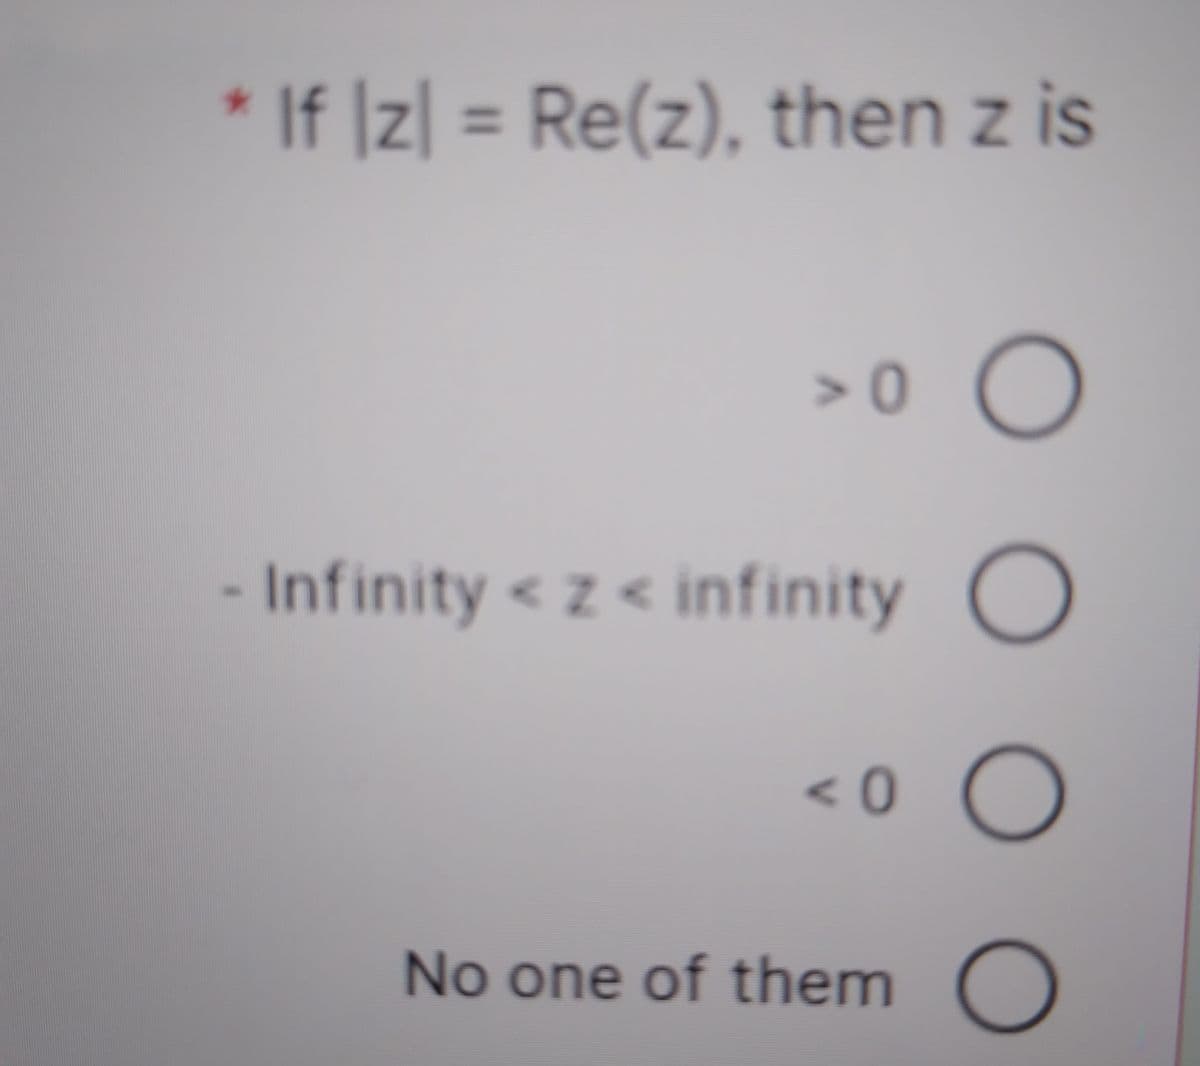 * If ]z| = Re(z), then z is
%3D
Infinity < z < infinity C
<0
No one of them
